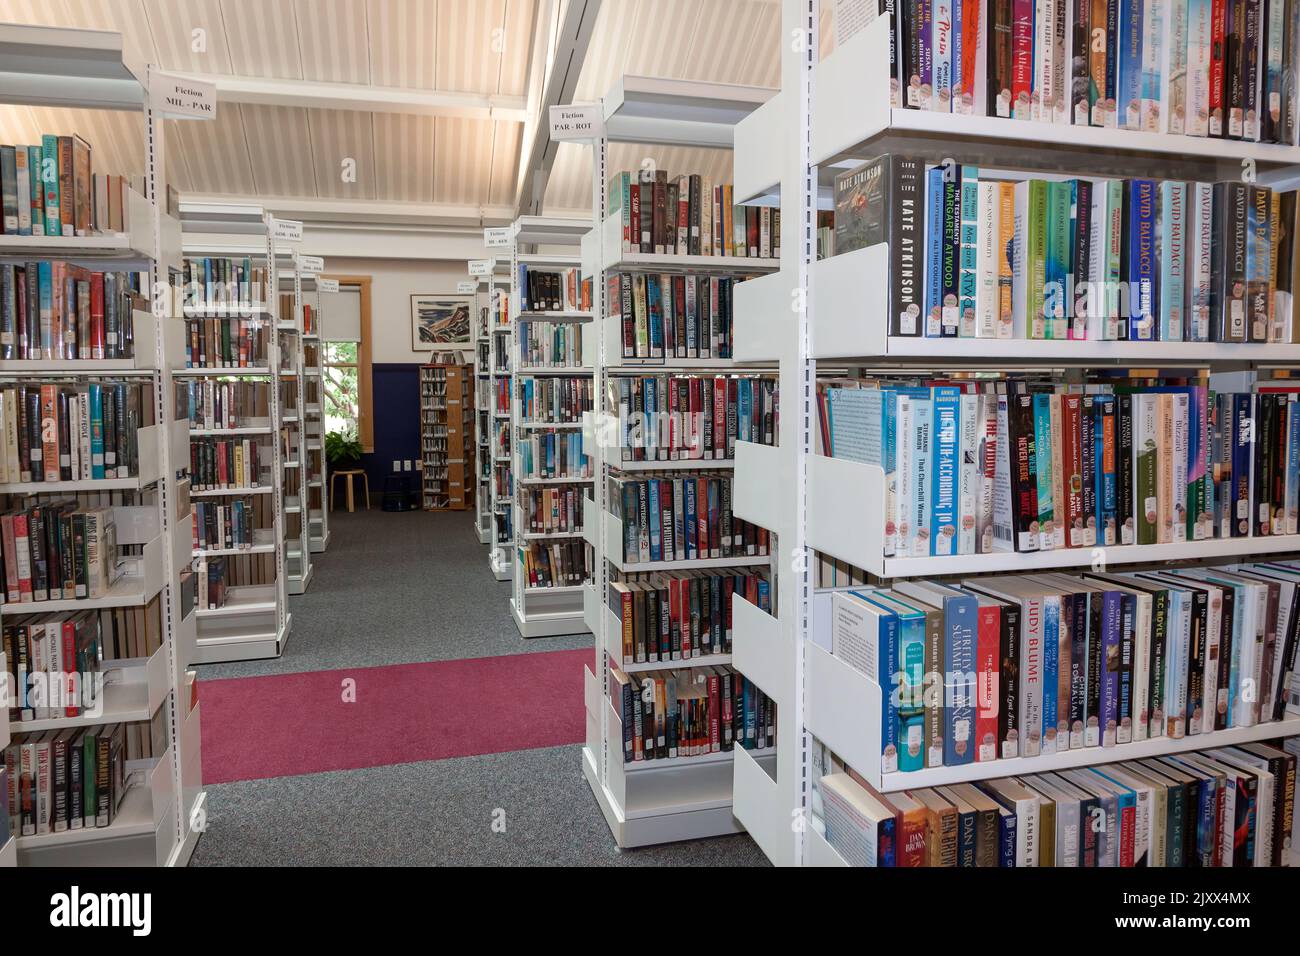 Librairies/piles dans la bibliothèque publique Truro, Truro, Massachusetts, Cape Cod, États-Unis. Banque D'Images